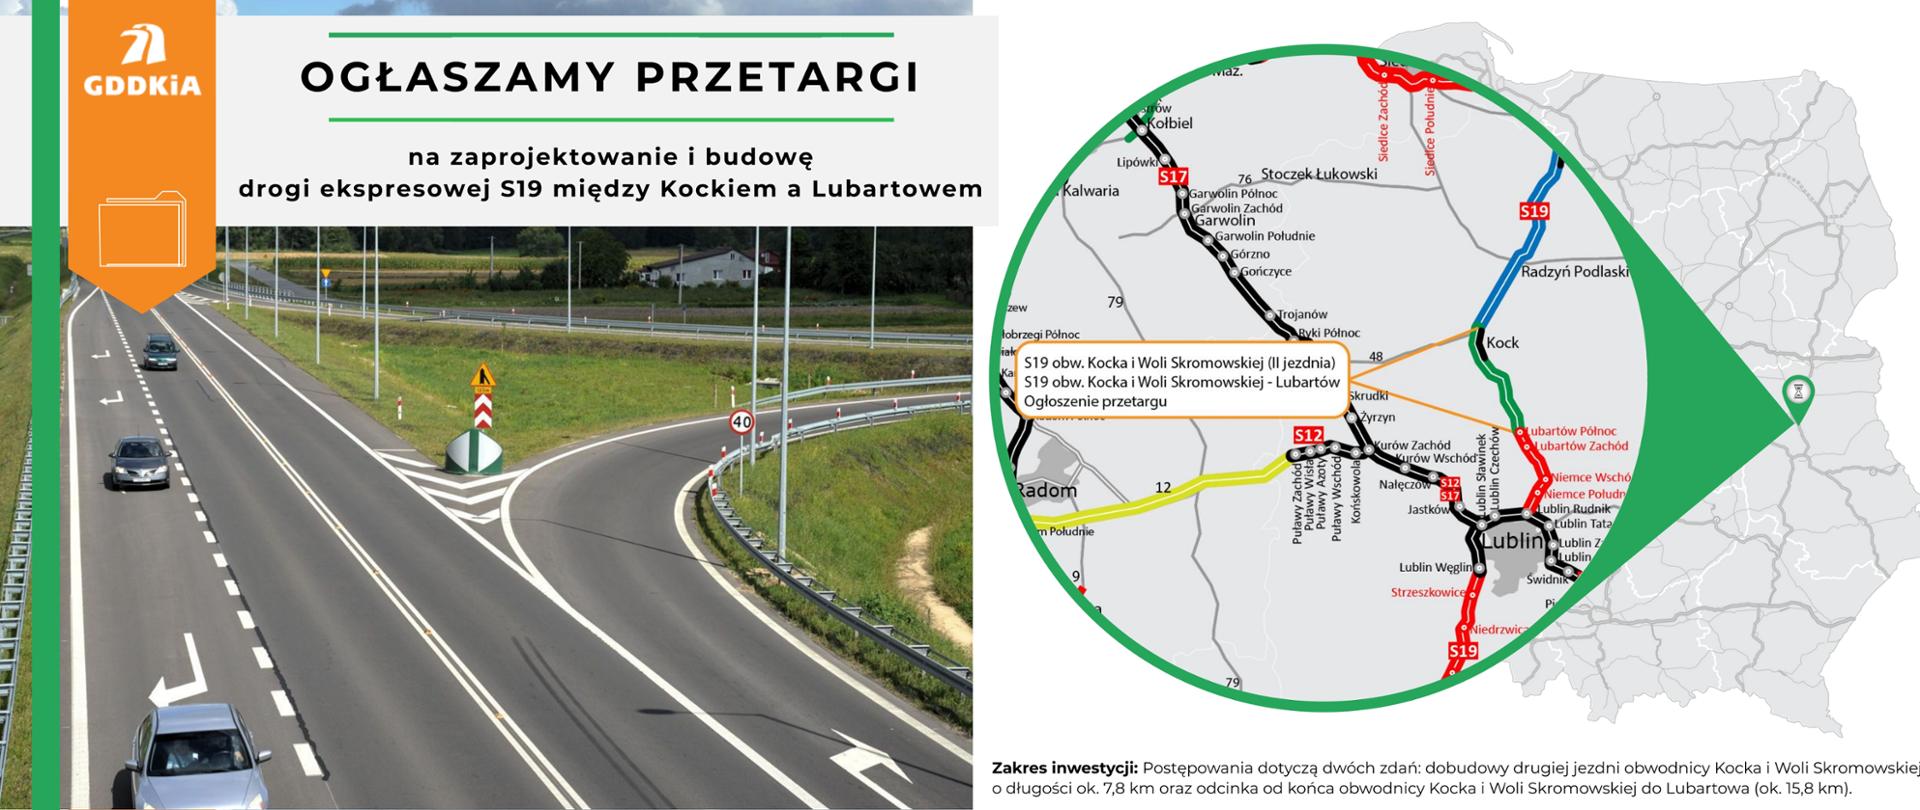 Infografika na ogłoszenie przetargu na zaprojektowanie i budowę drogi ekspresowej S19, II jezdni na obwodnicy Kocka i Woli Skromowskiej oraz po nowym śladzie do Lubartowa 